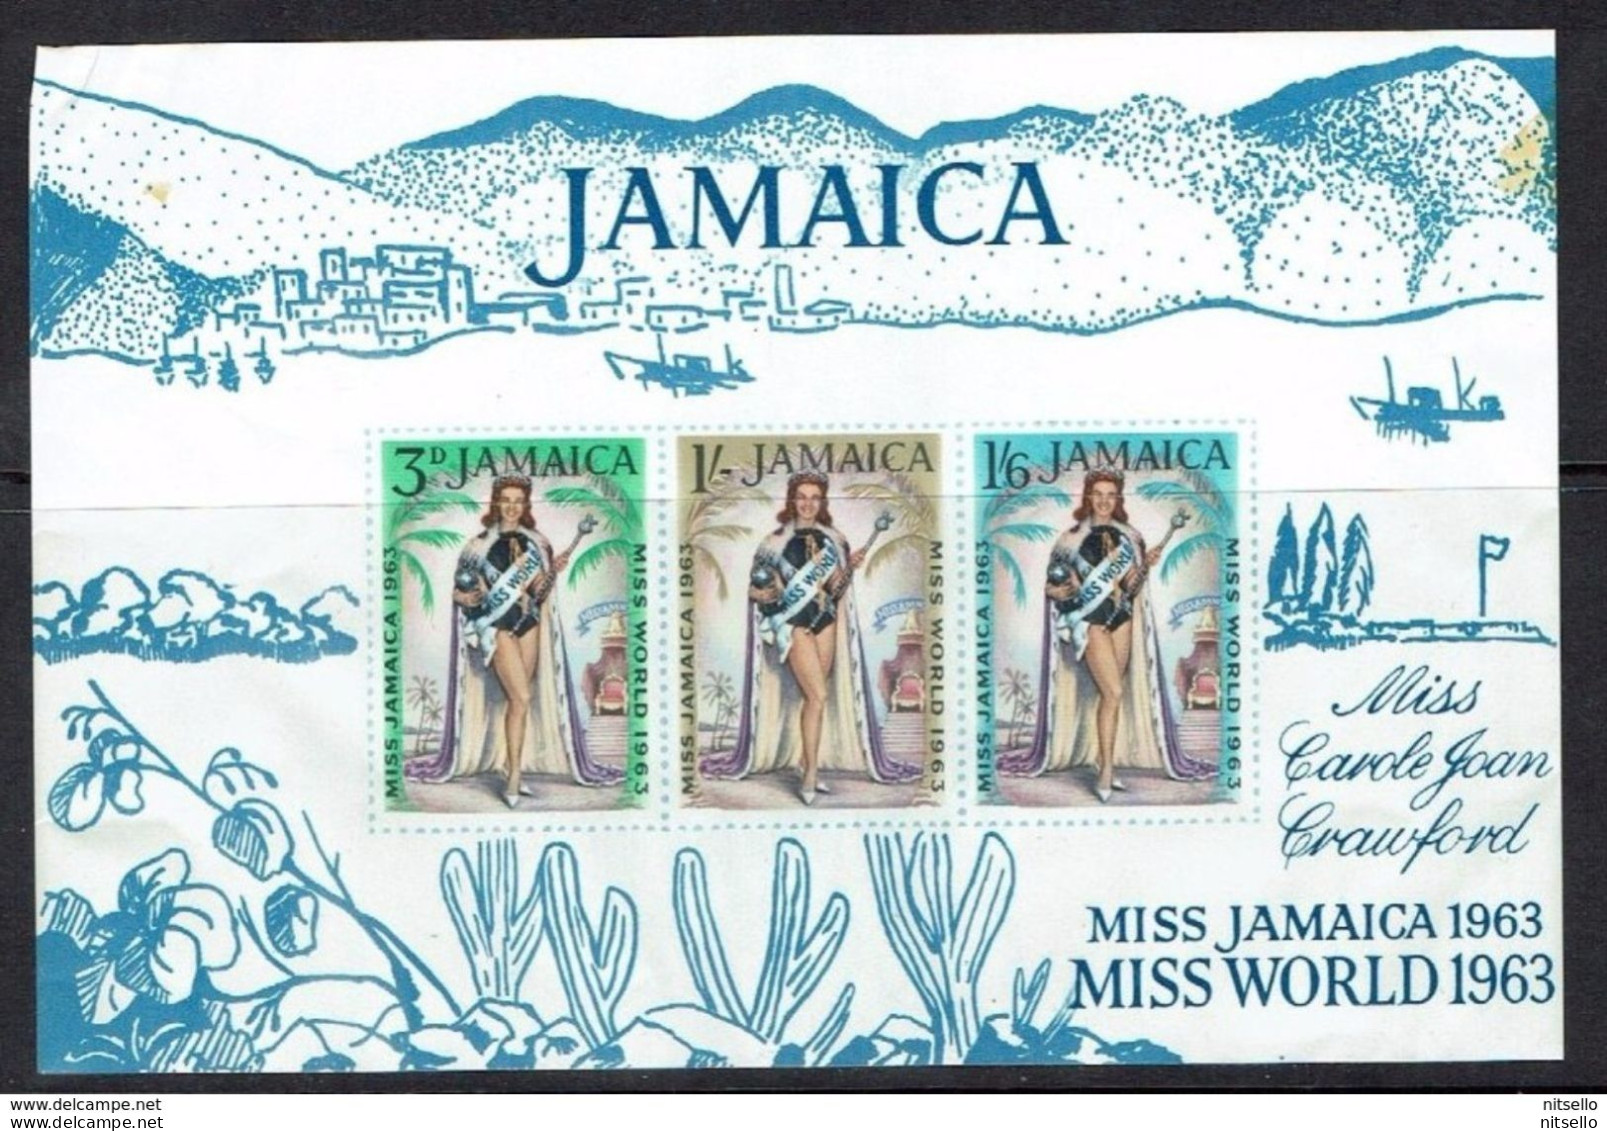 HB MUNDIAL   ///  (C100) JAMAICA 1960 HB    ¡¡¡¡ LIQUIDATION !!!! - Jamaica (1962-...)